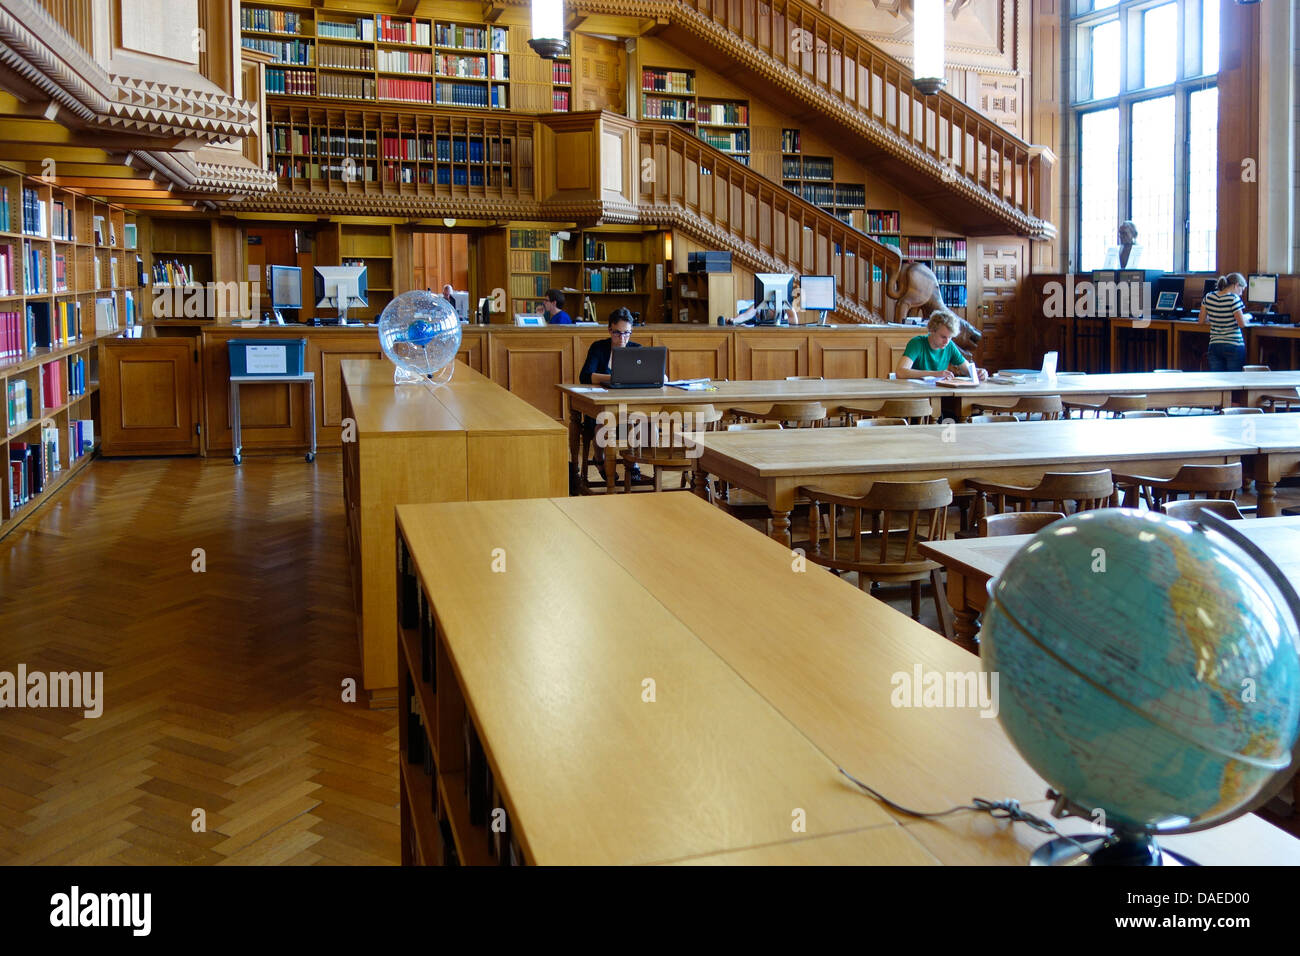 Grosse Bücherregale mit Sammlungen von Büchern und Studierende in der Universitätsbibliothek von Leuven / Louvain, Belgien Stockfoto